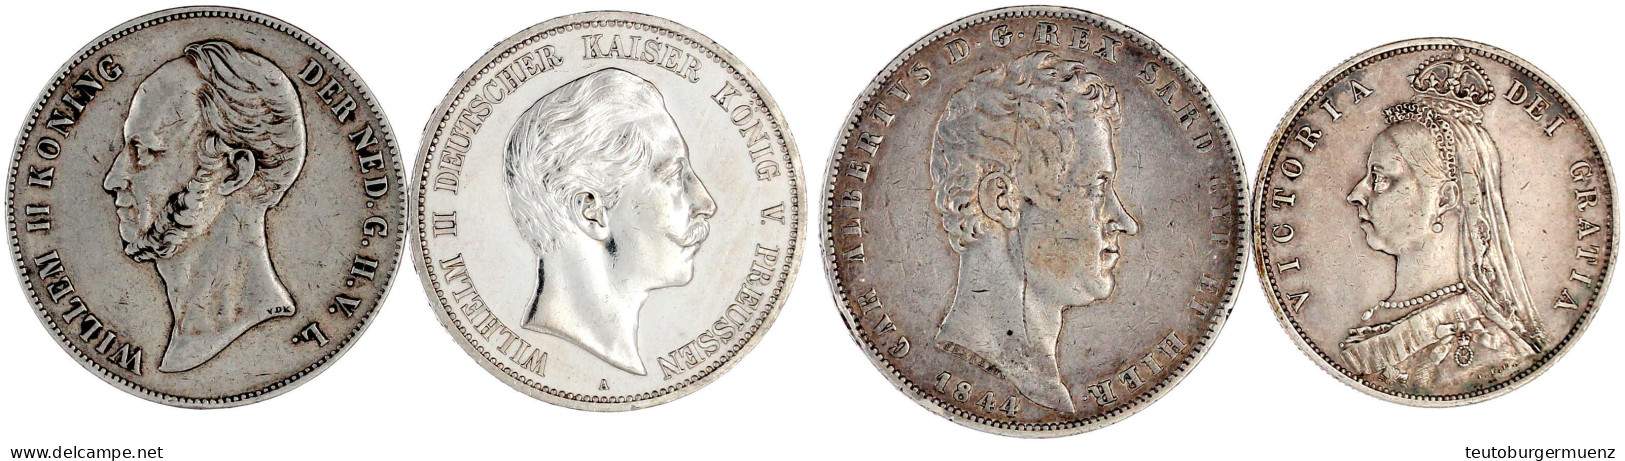 4 Silbermünzen: Preussen 5 Mark 1908 (vz, Berieben), Niederlande 2 1/2 Gulden 1847, Italien Sardinien 5 Lire 1844, Großb - Other - Europe